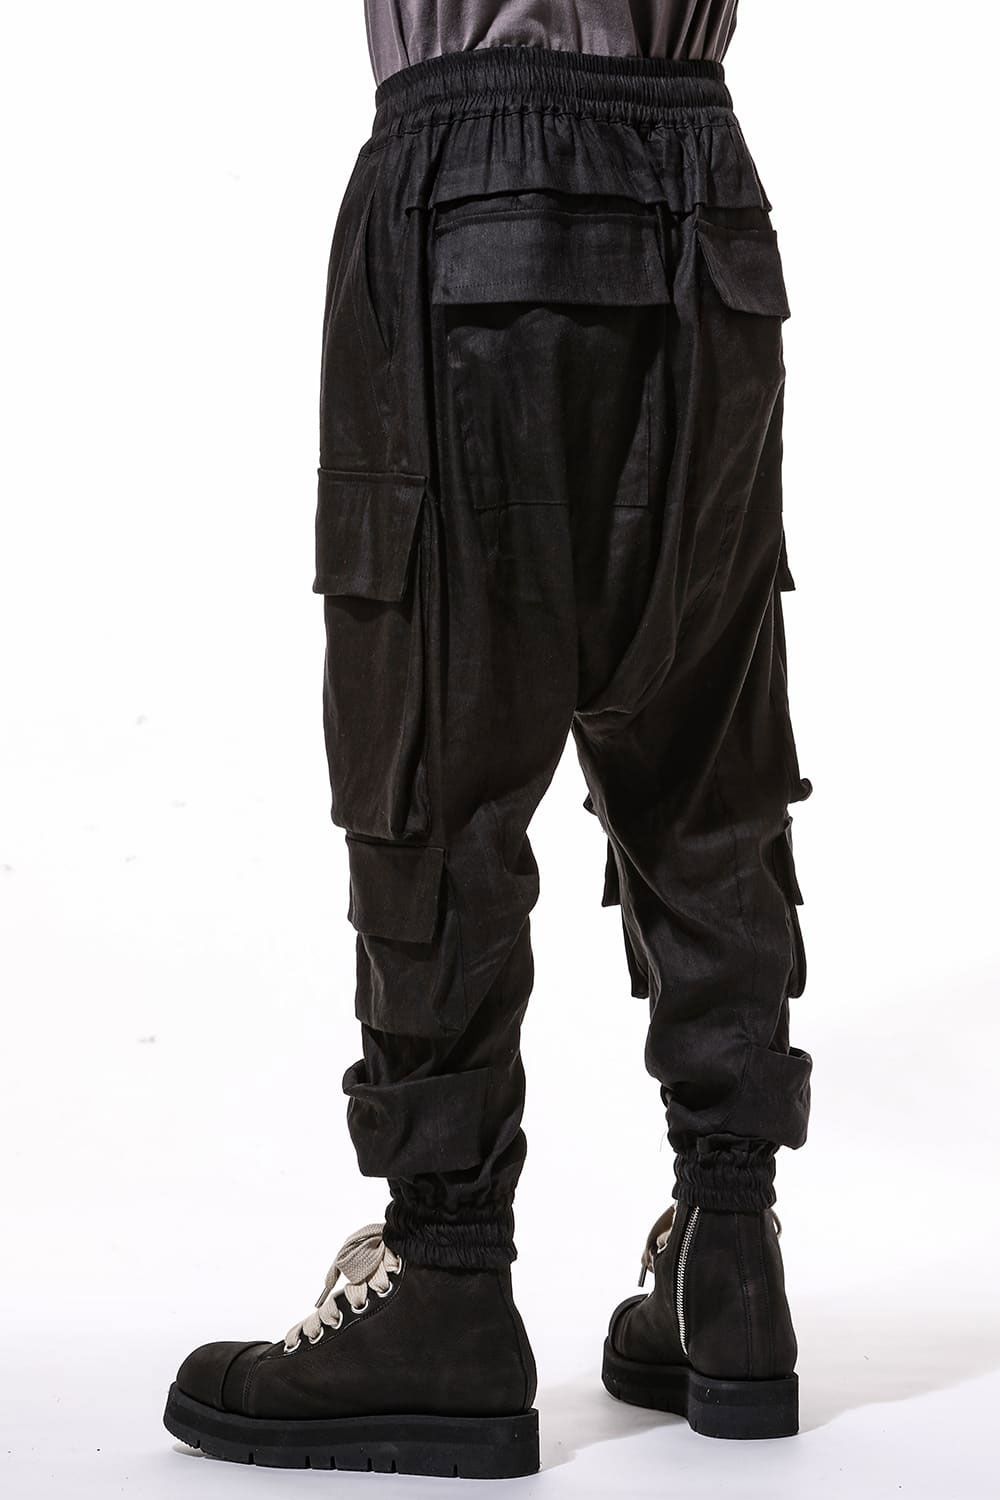 ミリタリーサルエルパンツ / Military Sarouel Long Pants / ブラック / ag-9067 - 1 (S)